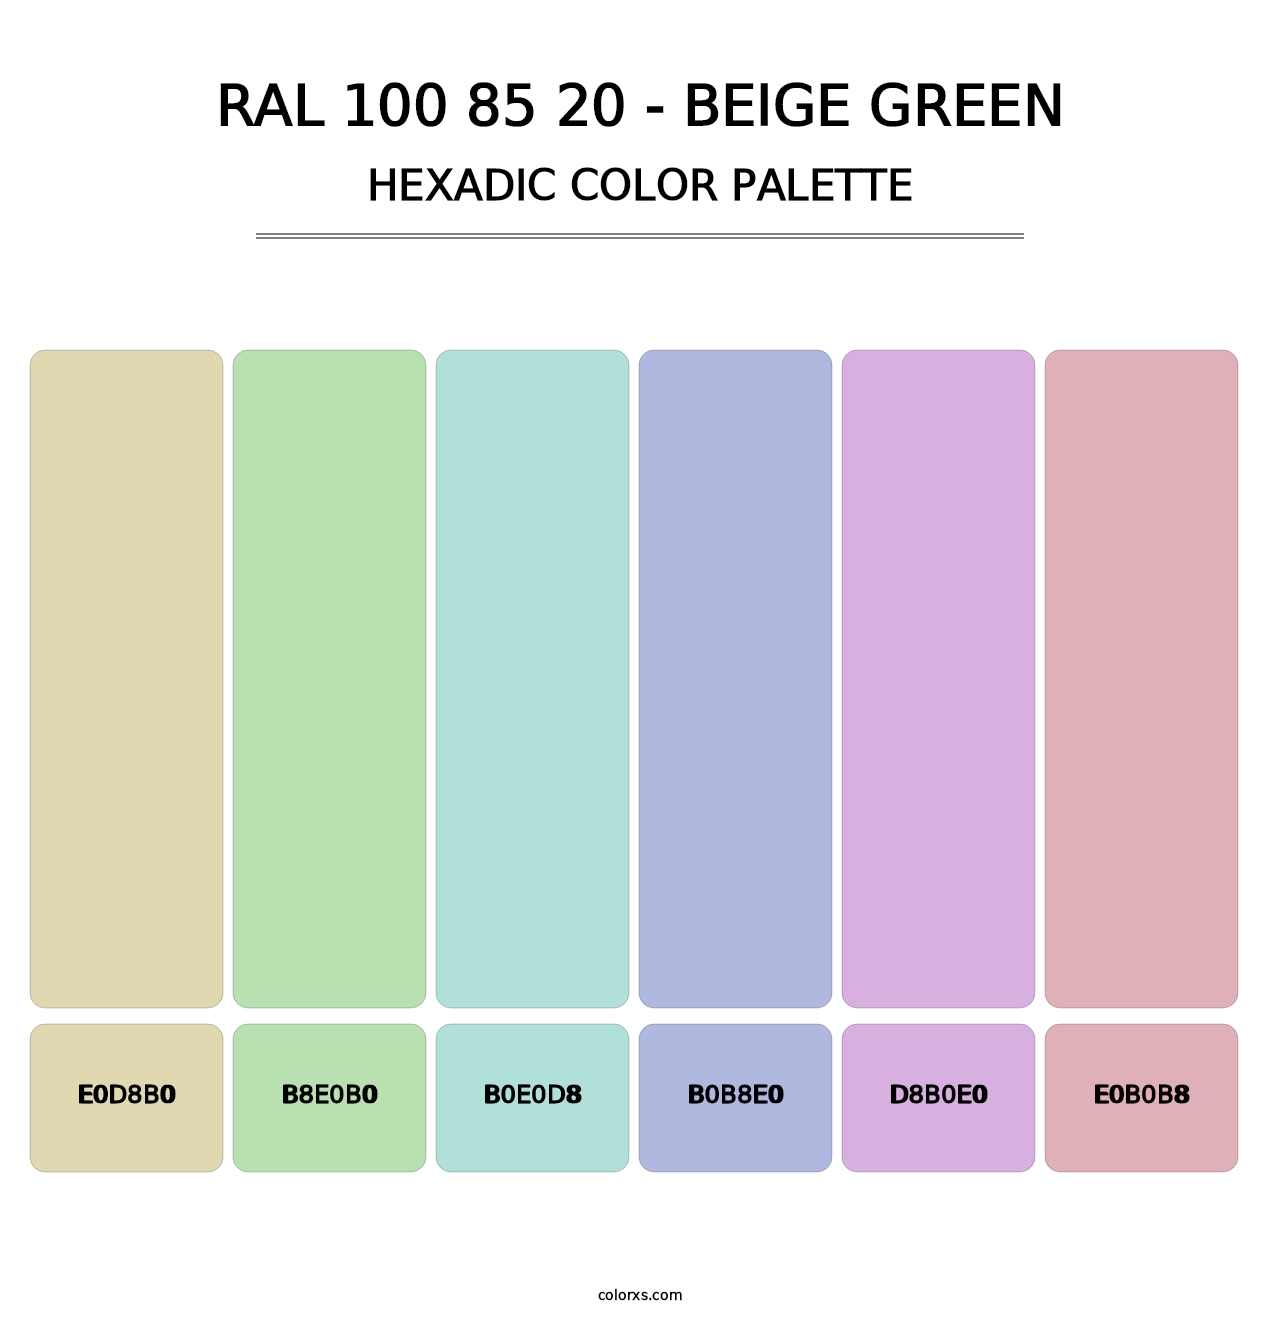 RAL 100 85 20 - Beige Green - Hexadic Color Palette